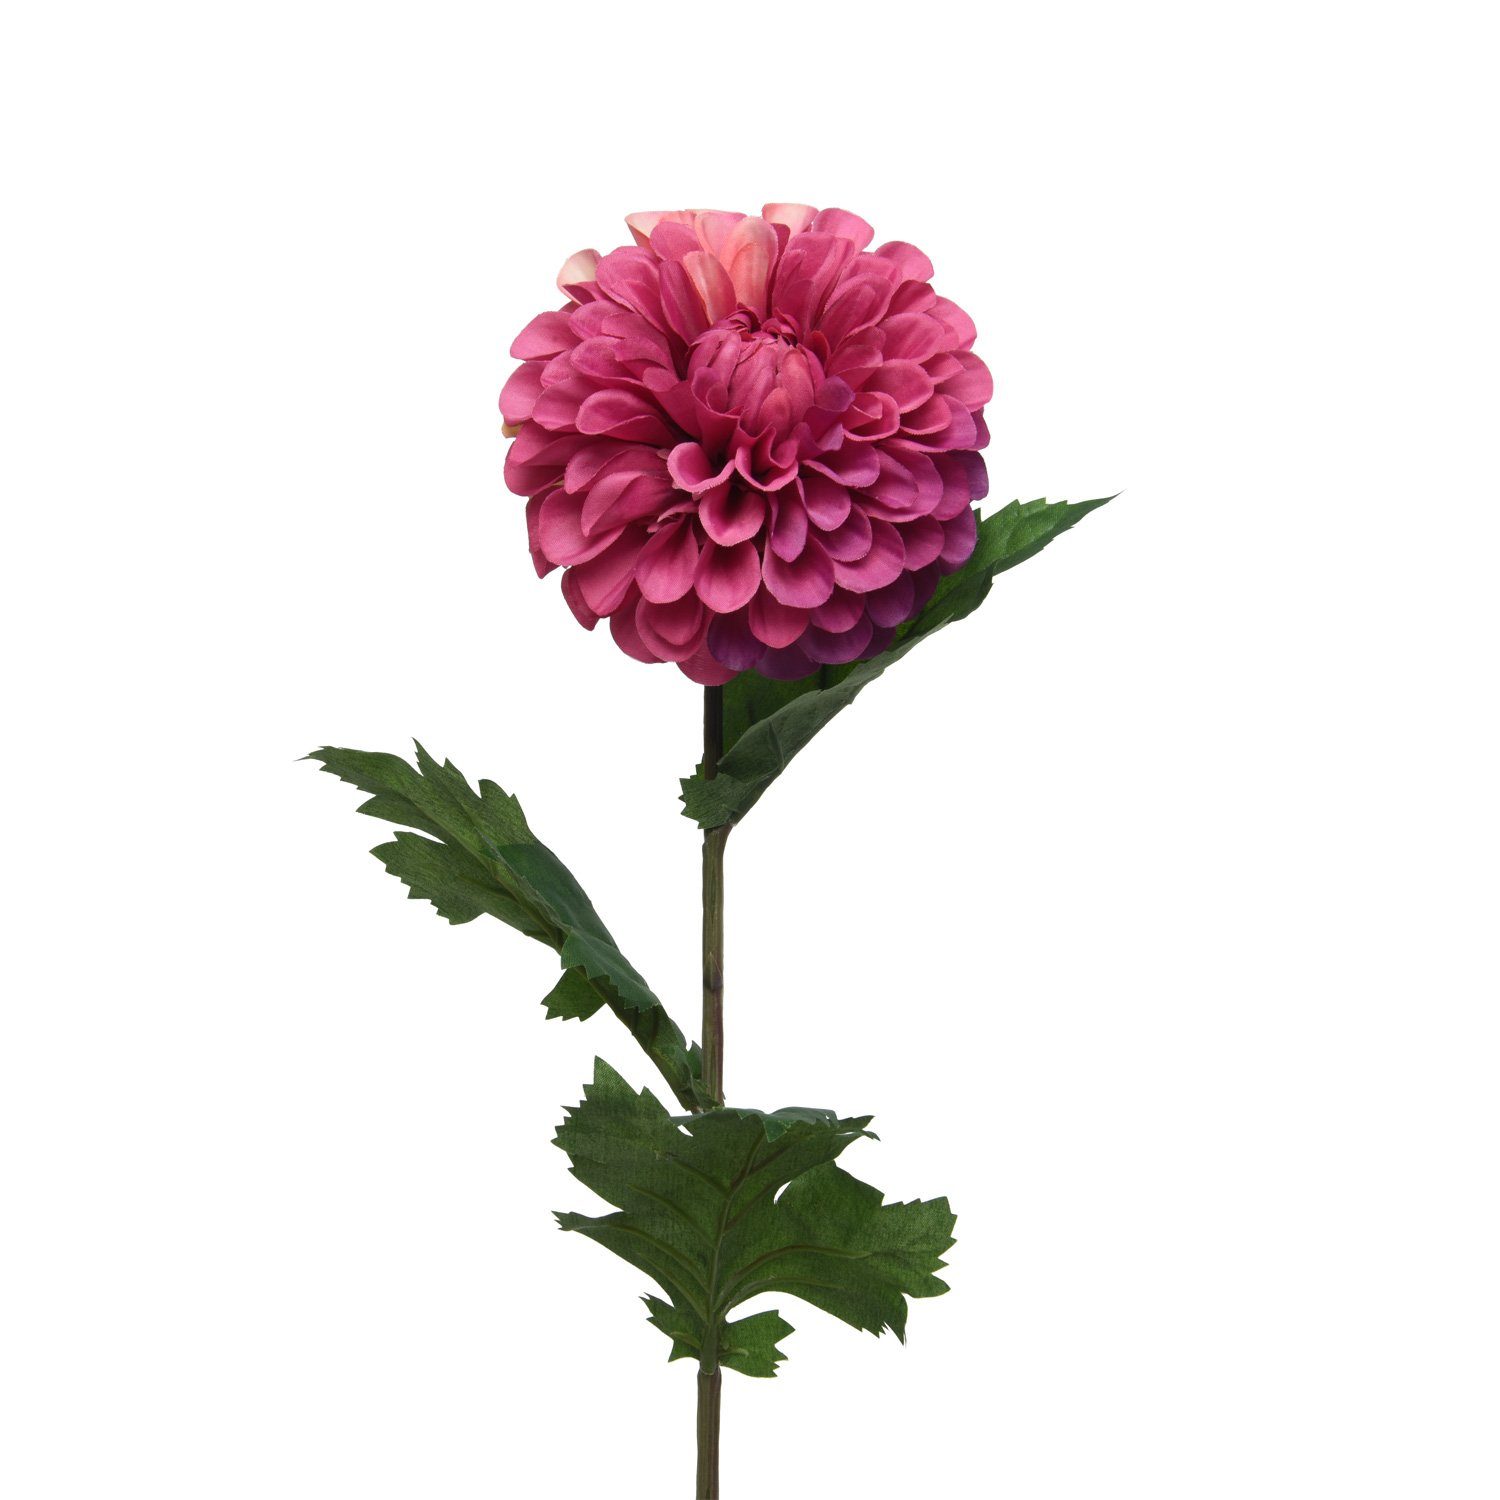 Neue Artikel im Ausland erhältlich! Kunstblume Dahlie am Stiel Pompon cm Höhe MARELIDA, Stielblume rot, 75 H: Dekoblume 75cm Kunstblume